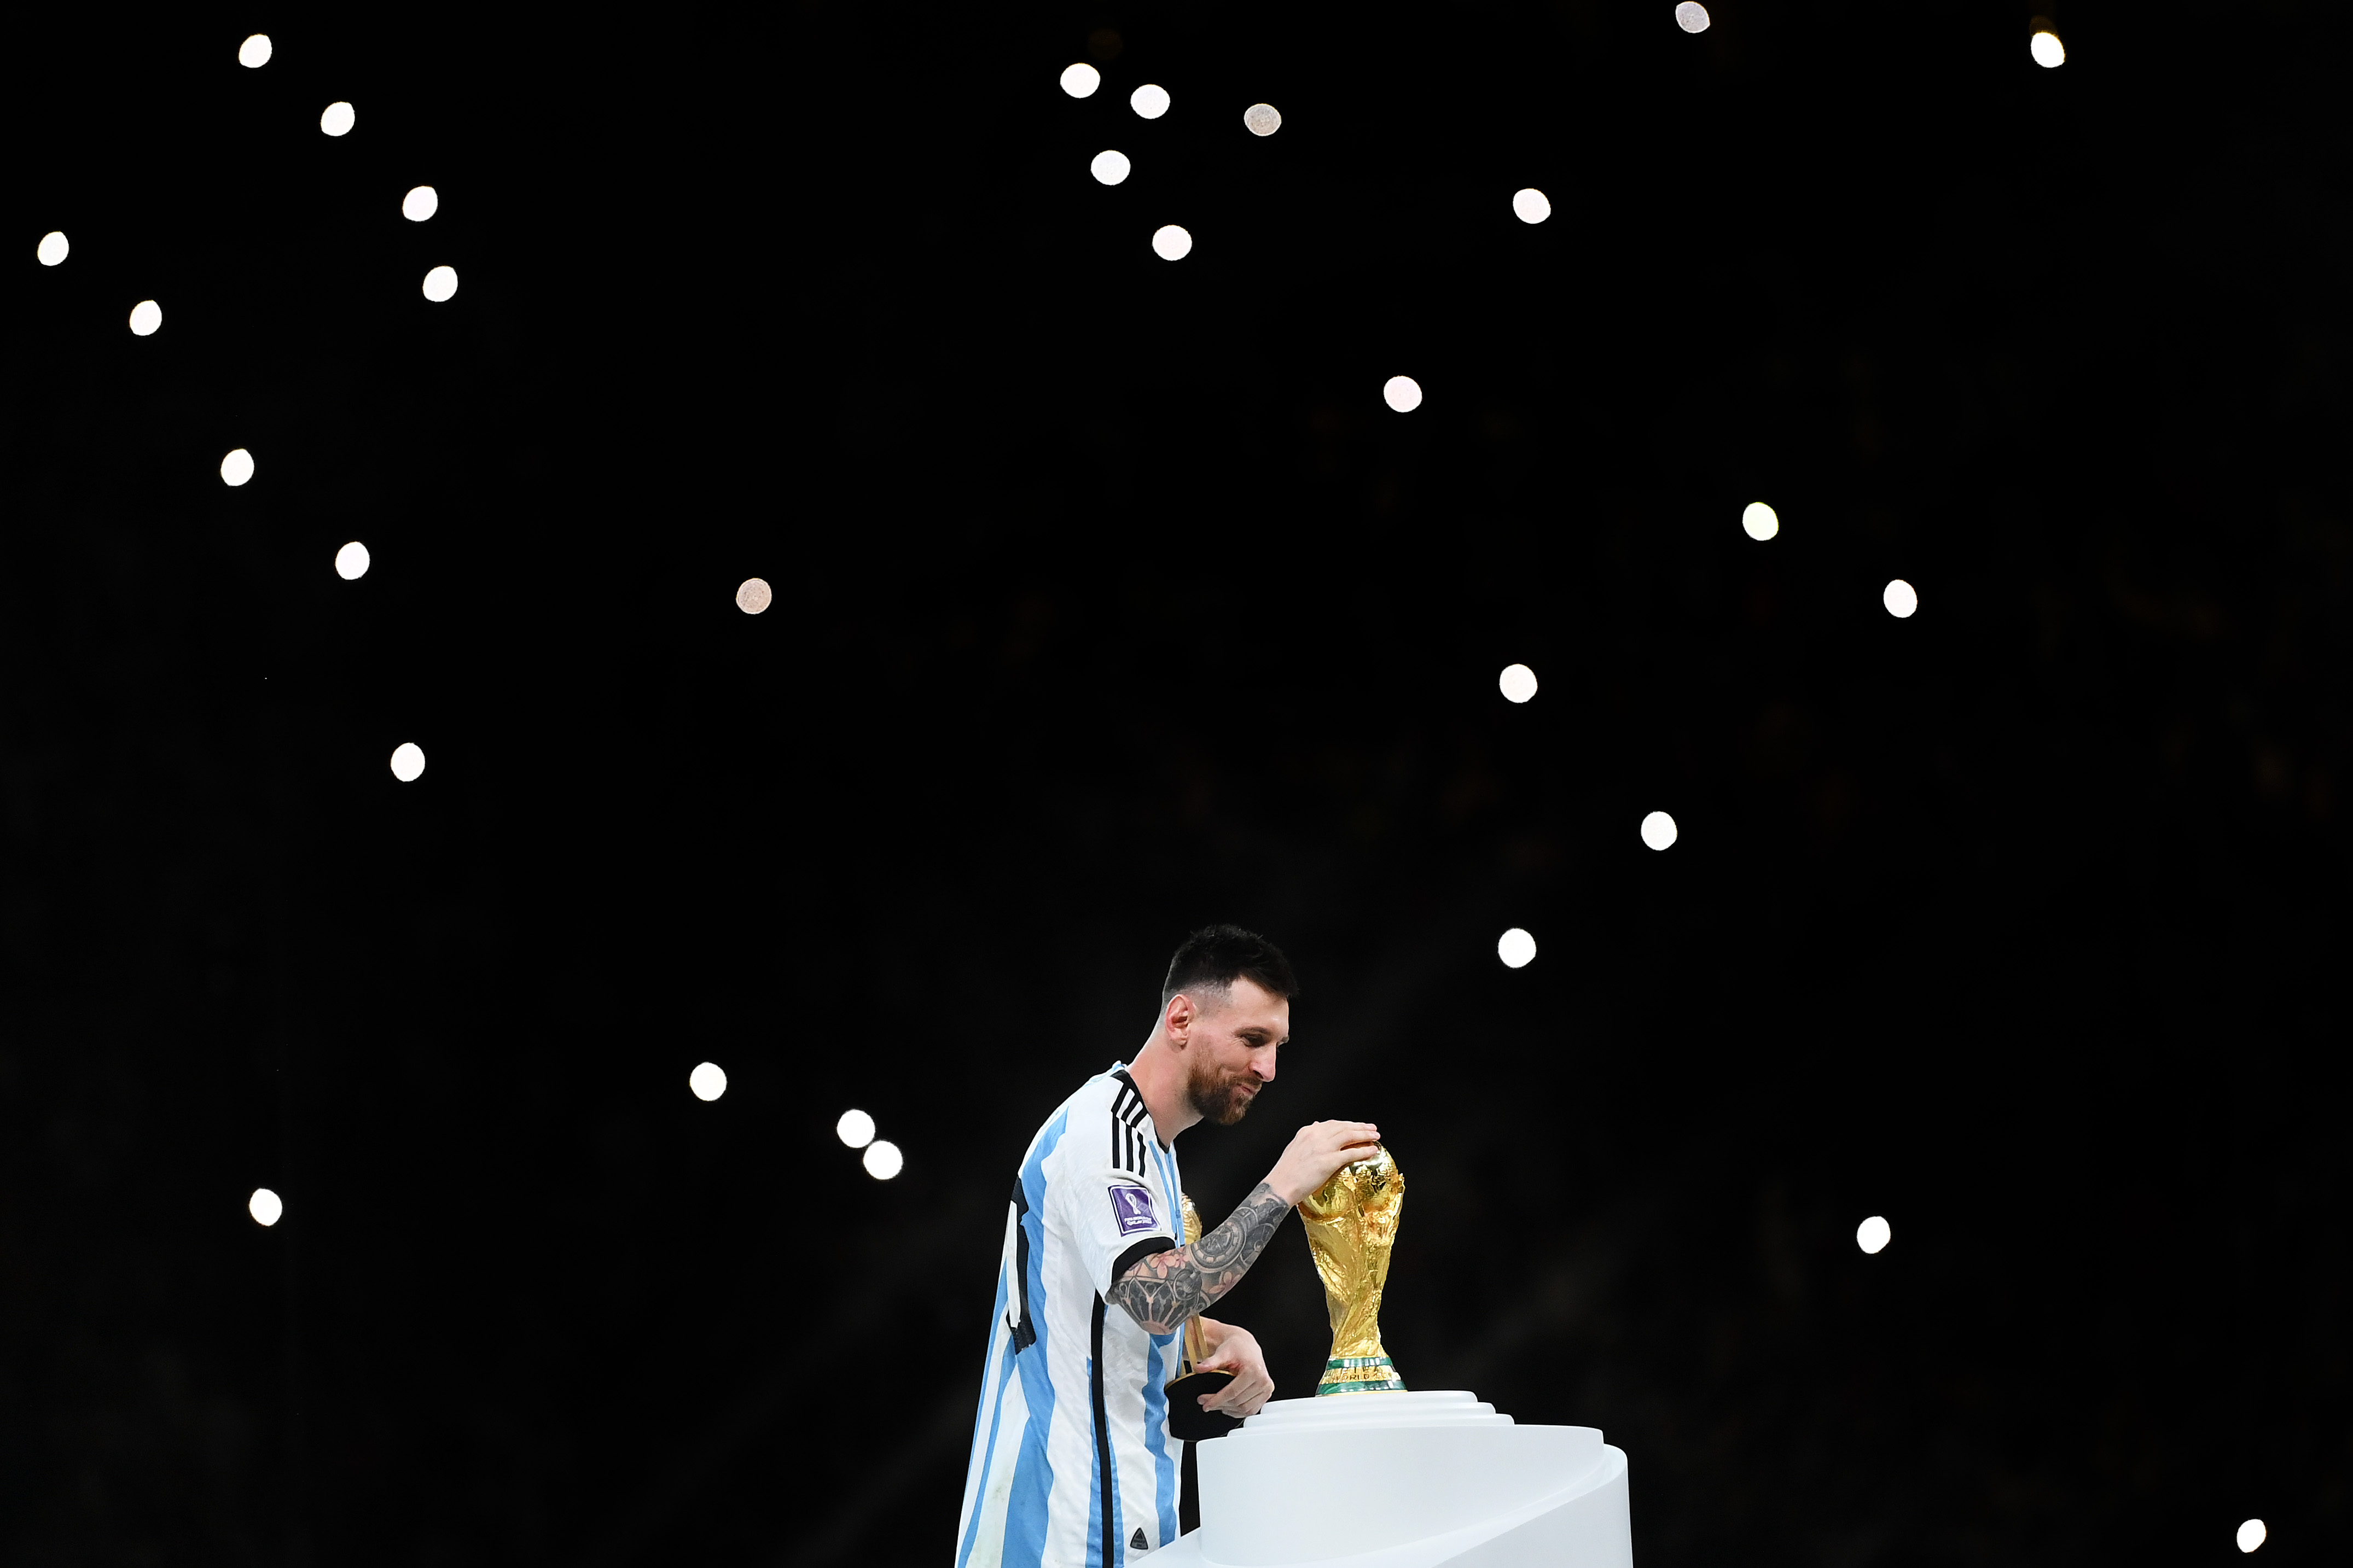 阿根廷的莱昂内尔·梅西 (Lionel Messi) 在赢得卡塔尔决赛后触摸世界杯奖杯，足球能否从自身中拯救出来，背景是摄像机灯。